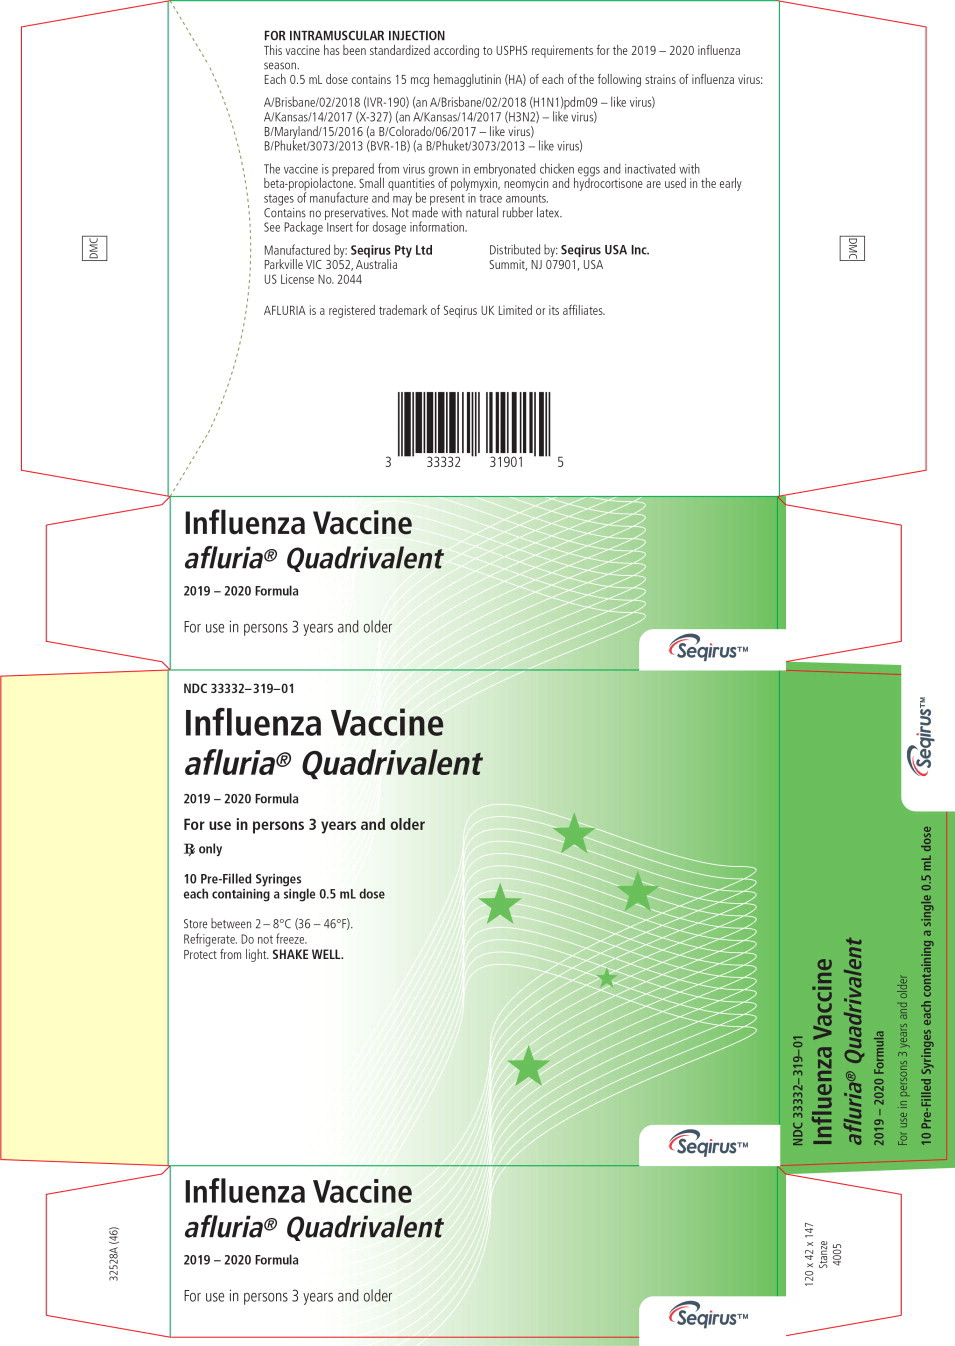 AFLURIA QUADRIVALENT (influenza a virus a/brisbane/02/2018 ivr190